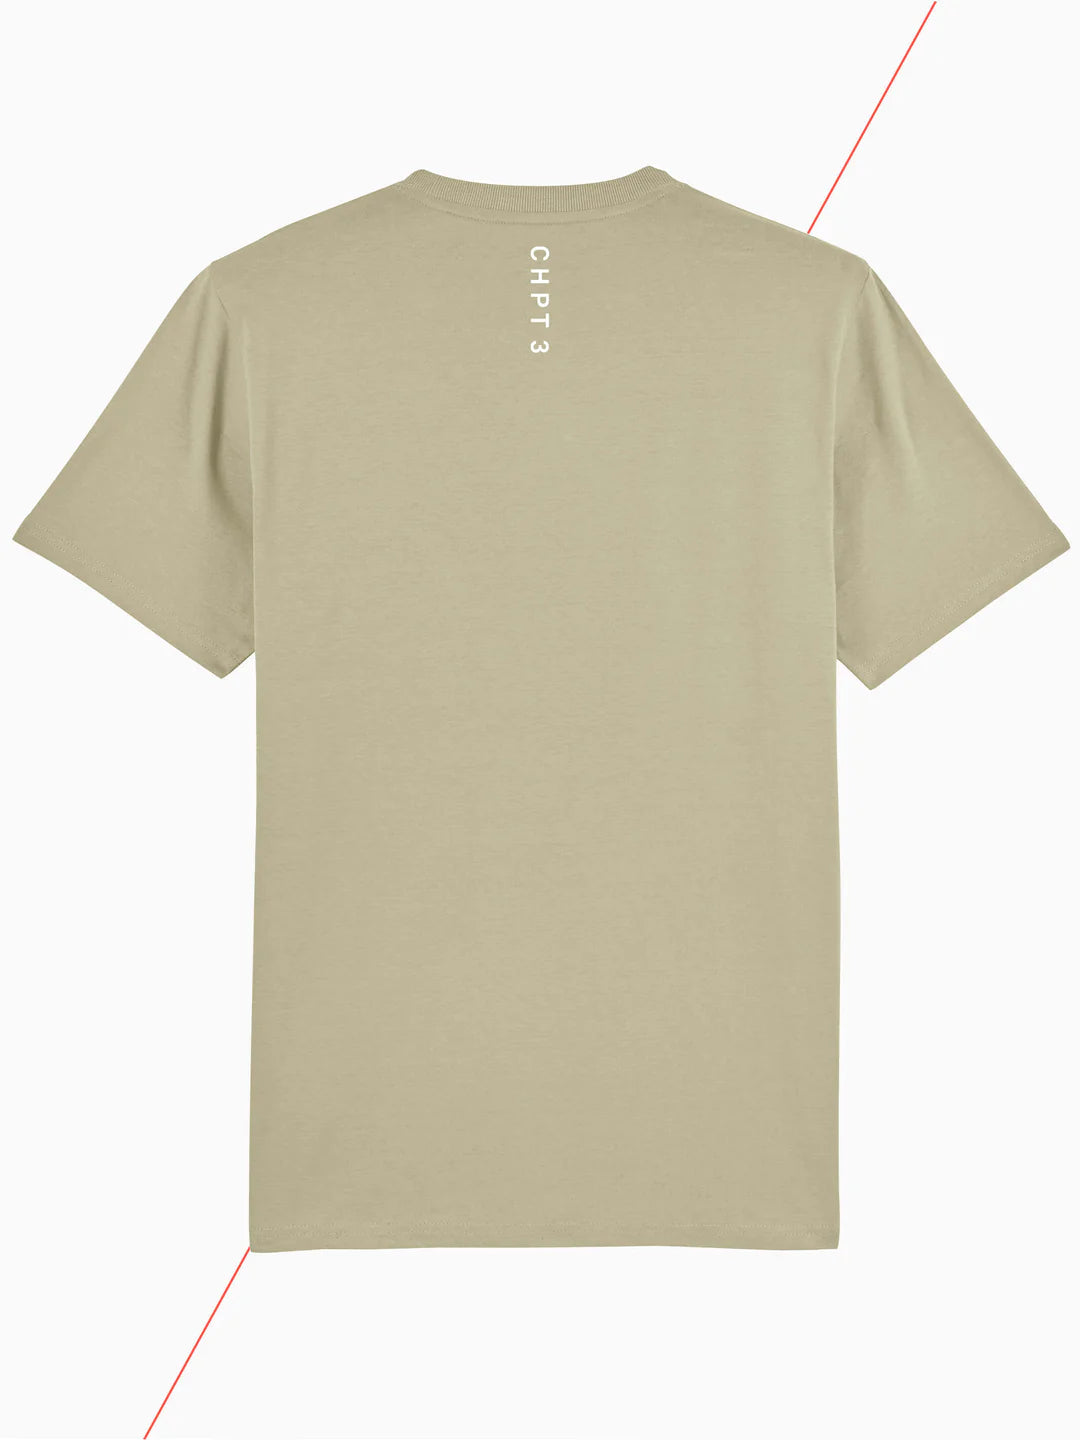 CHPT3 Unfollow T-Shirt